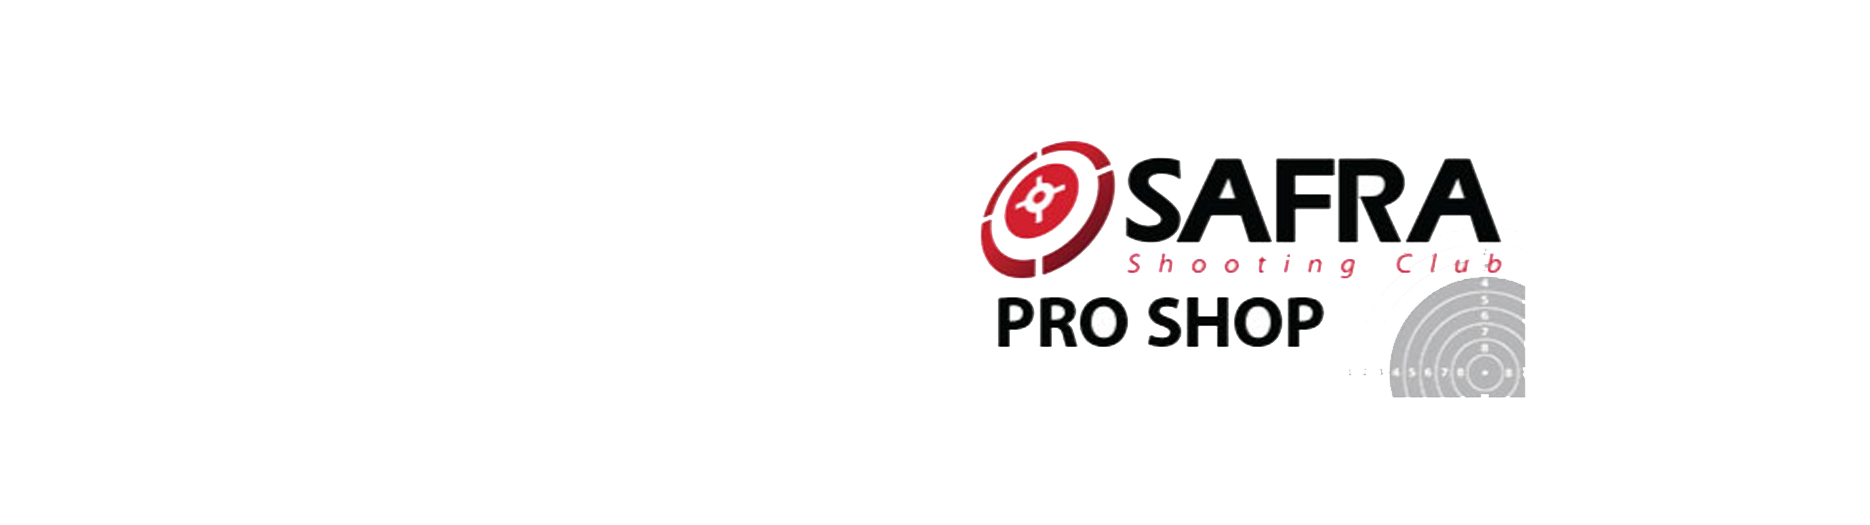 SAFRA-Shooting-Club-Pro-Shop-Banner